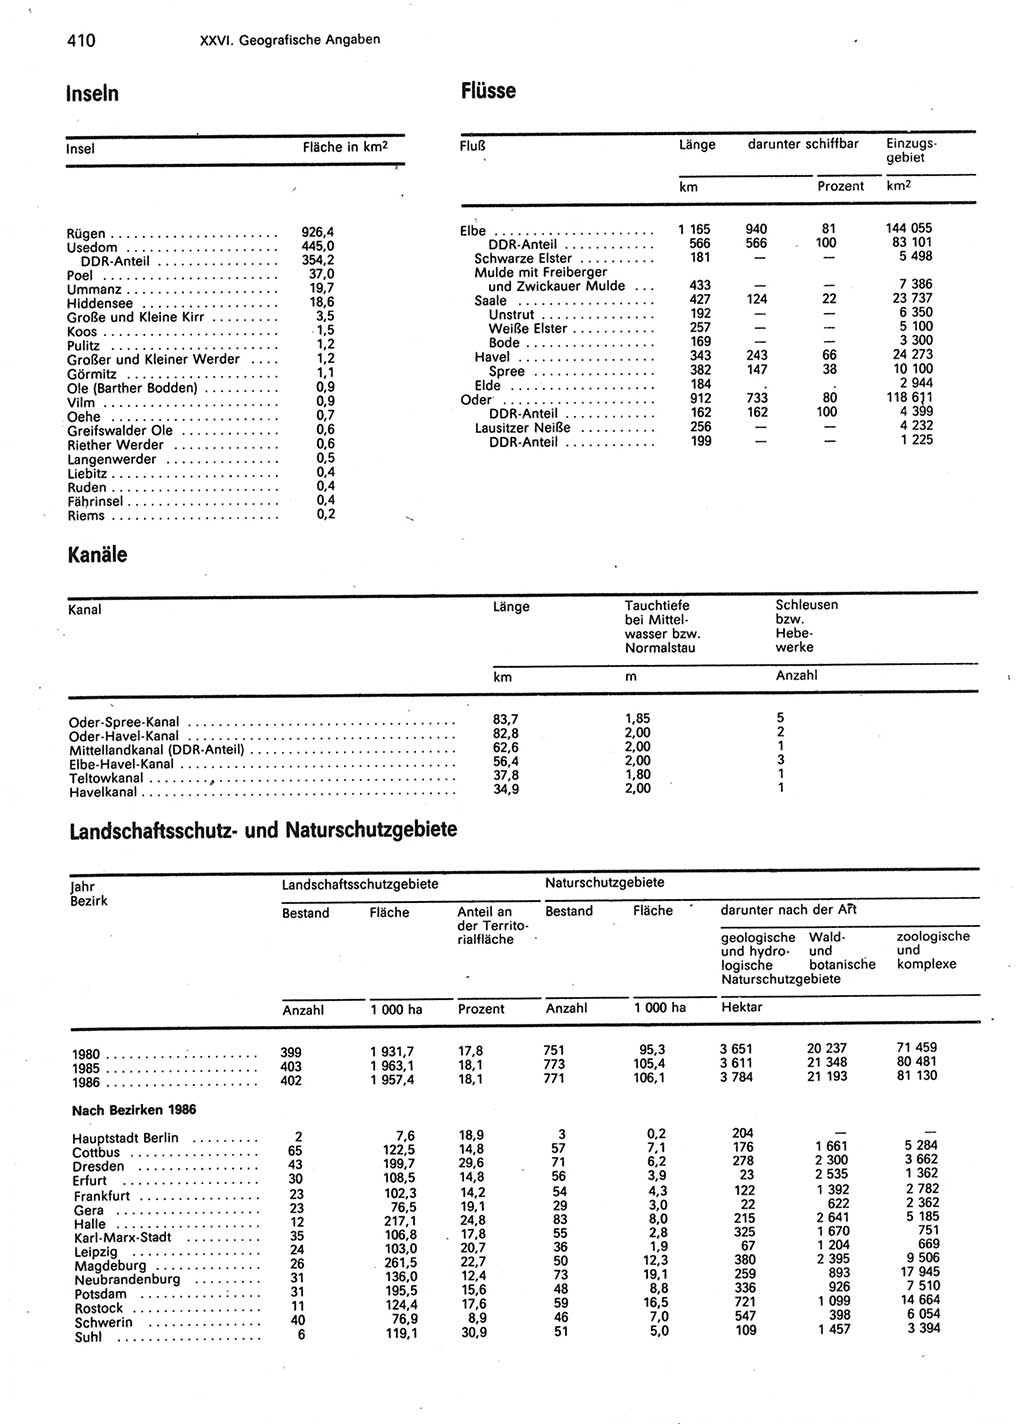 Statistisches Jahrbuch der Deutschen Demokratischen Republik (DDR) 1987, Seite 410 (Stat. Jb. DDR 1987, S. 410)